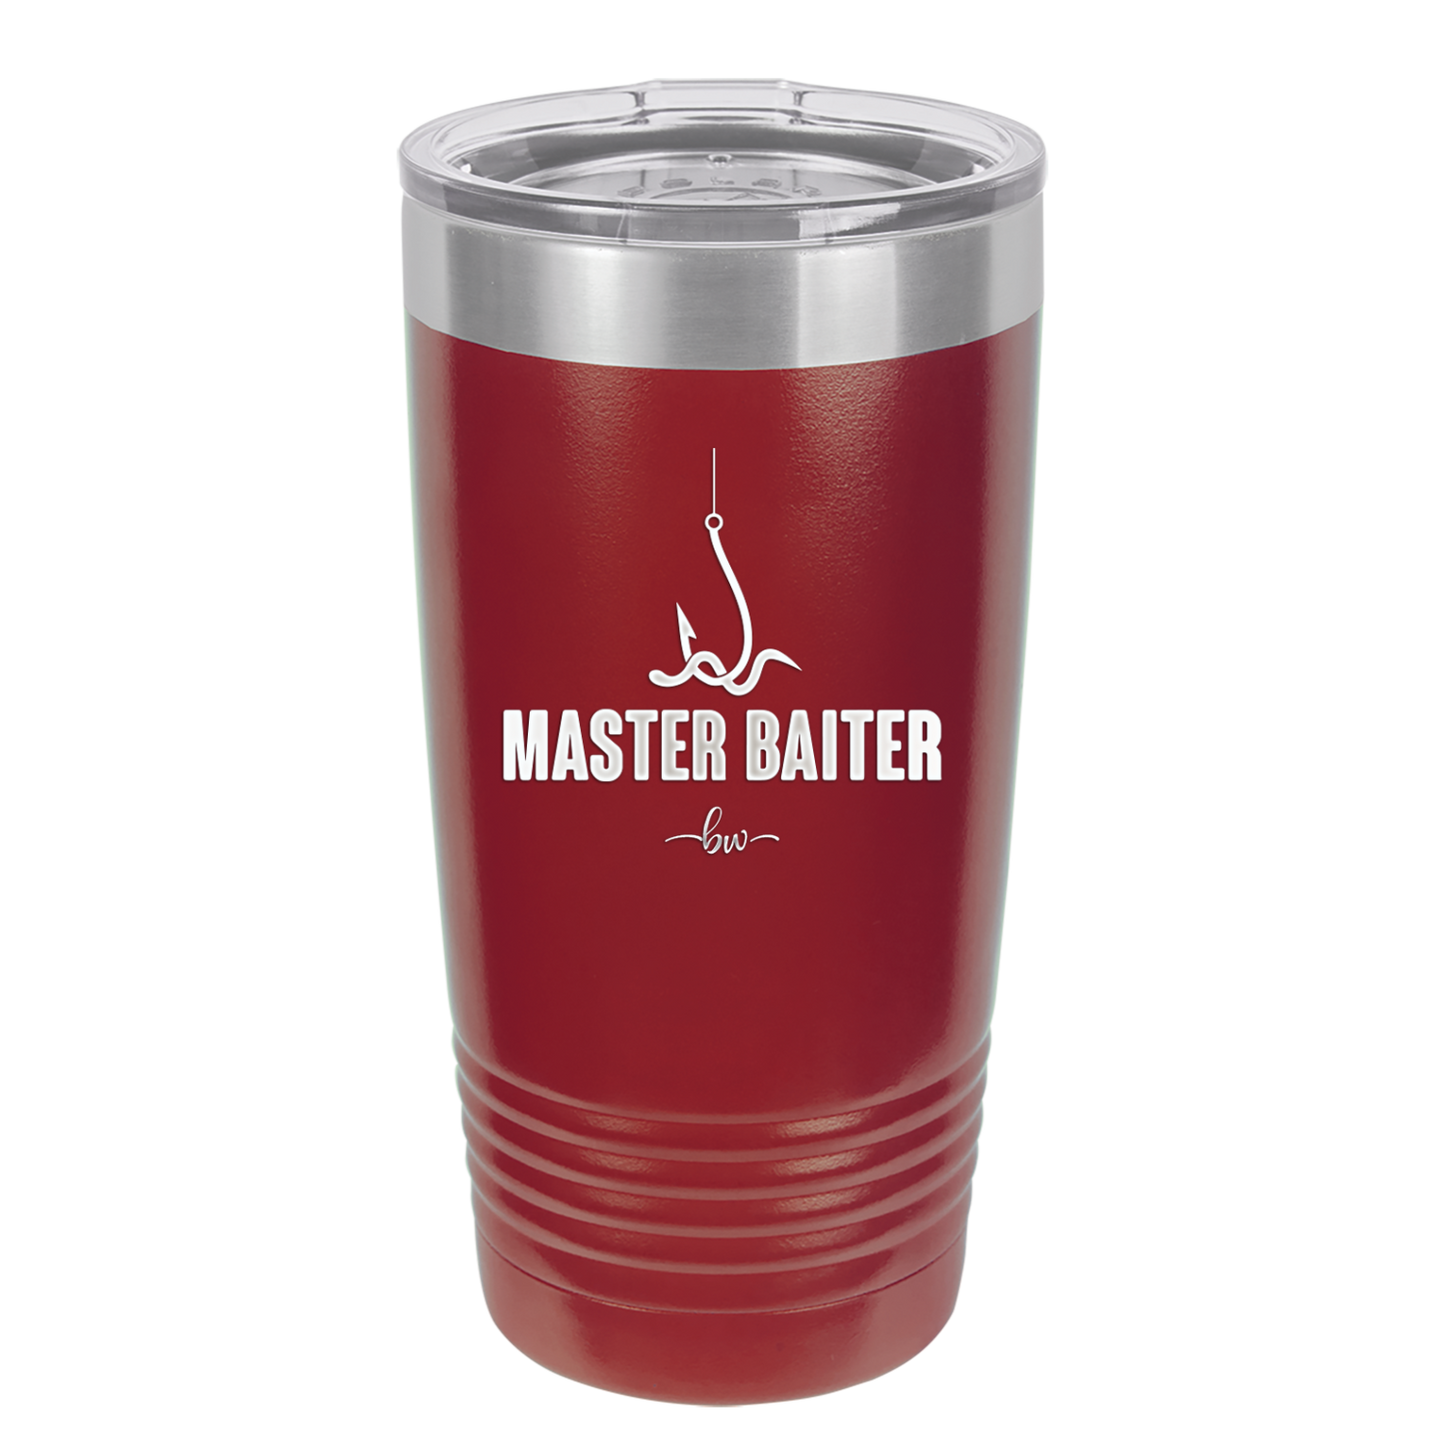 Master Baiter - Laser Engraved Stainless Steel Drinkware - 1571 -